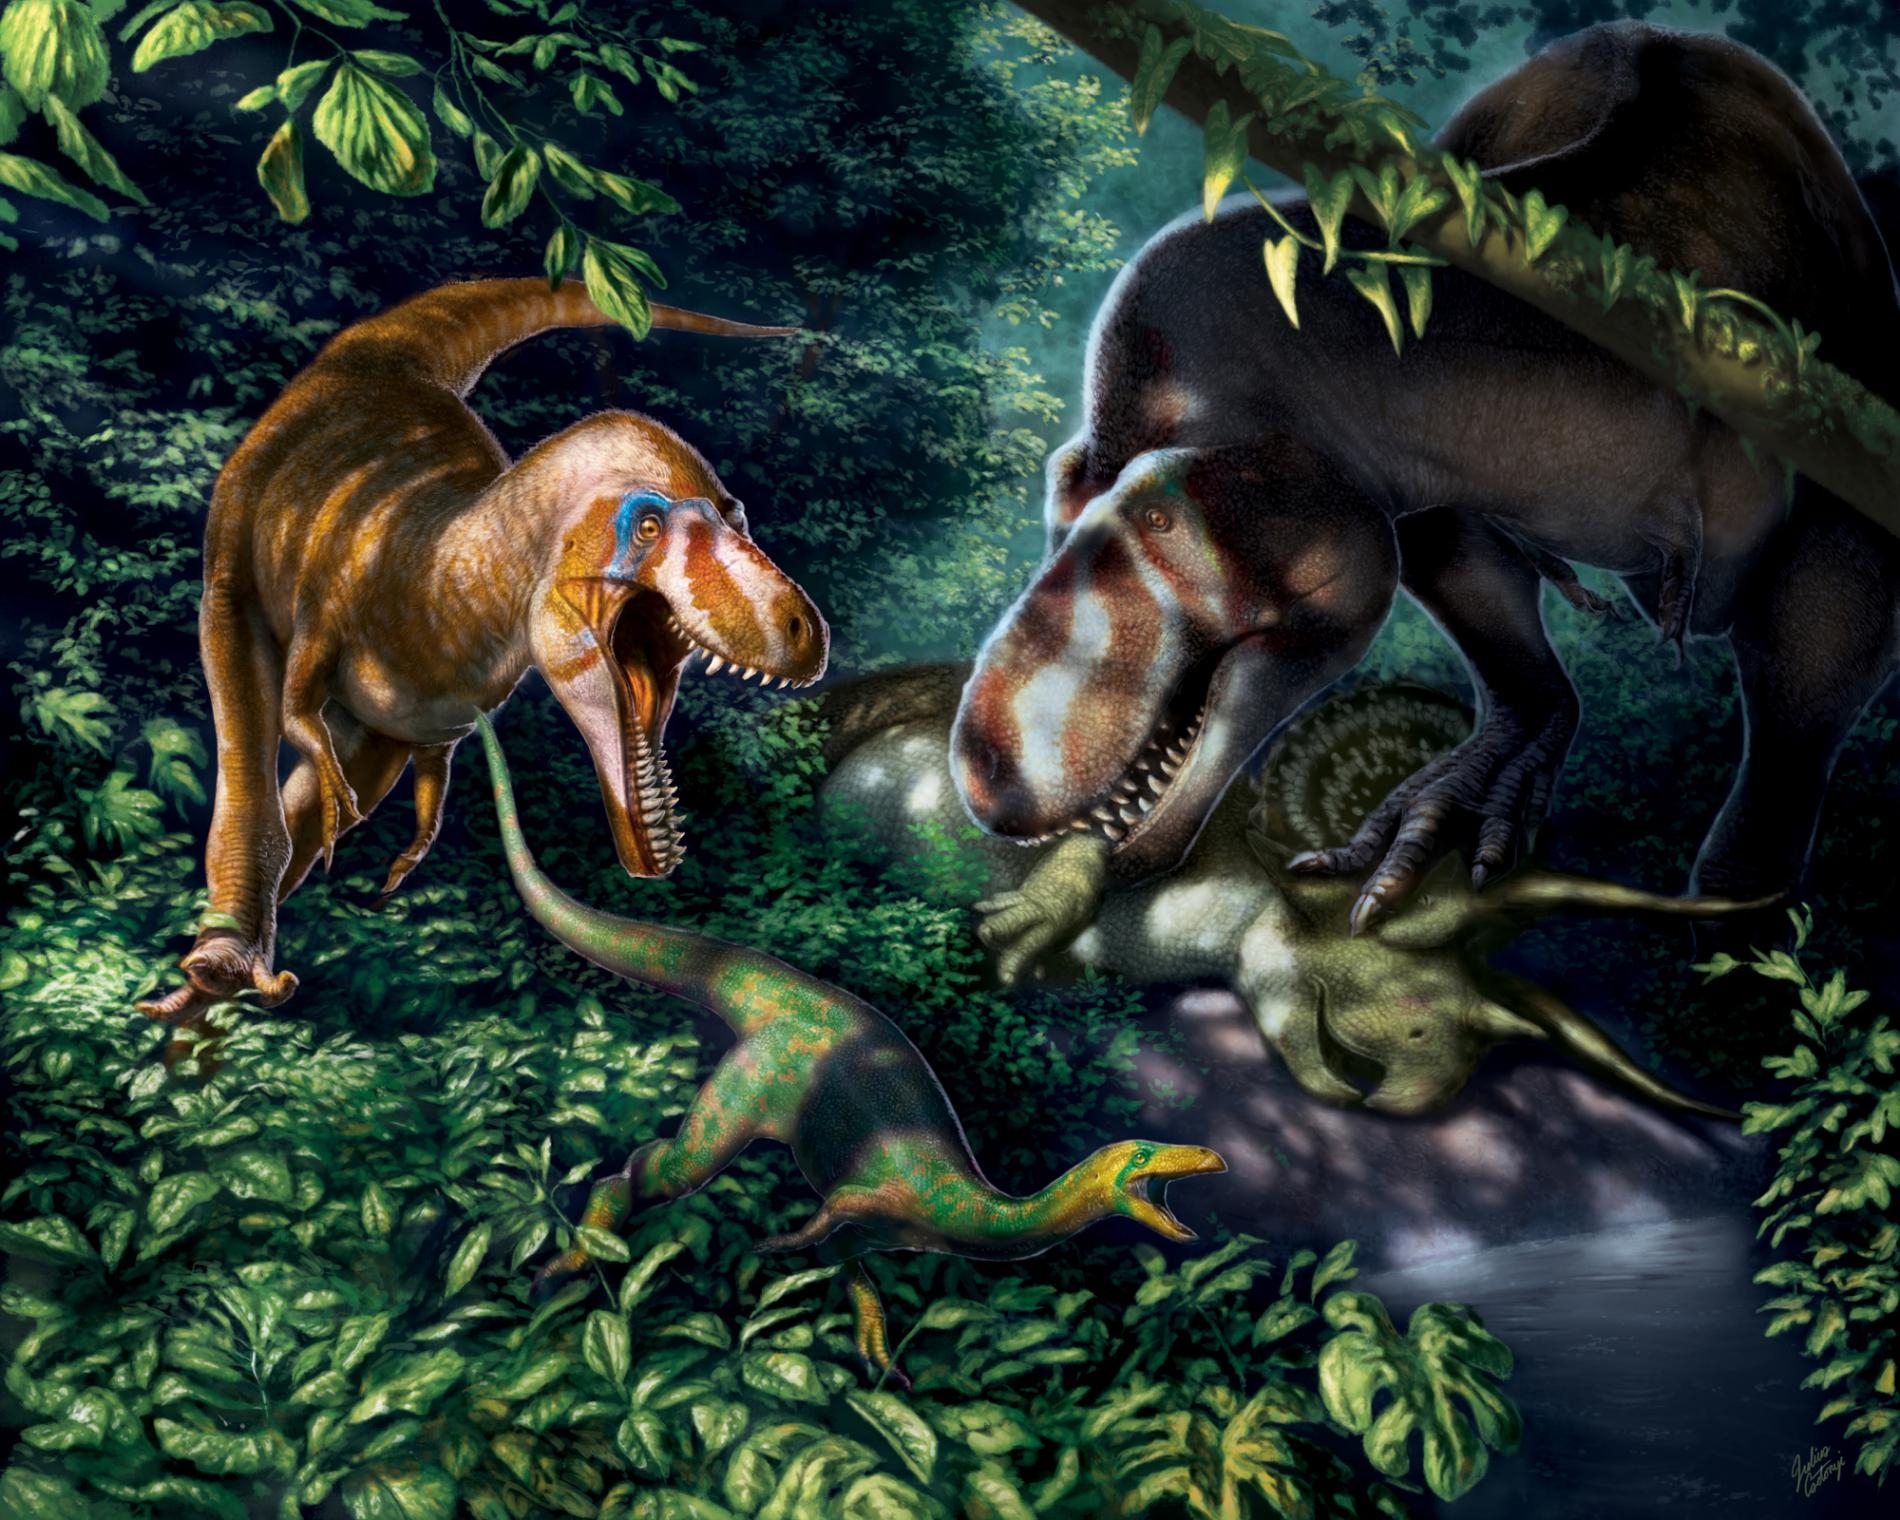 應屬霸王龍（Tyrannosaurus rex）亞成體的化石顯示這種牙可碎骨的龐然大物在十多歲時是配備著似刃利齒、精瘦而敏捷的掠食者。 ILLUSTRATION BY JULIUS T. CSOTONYI